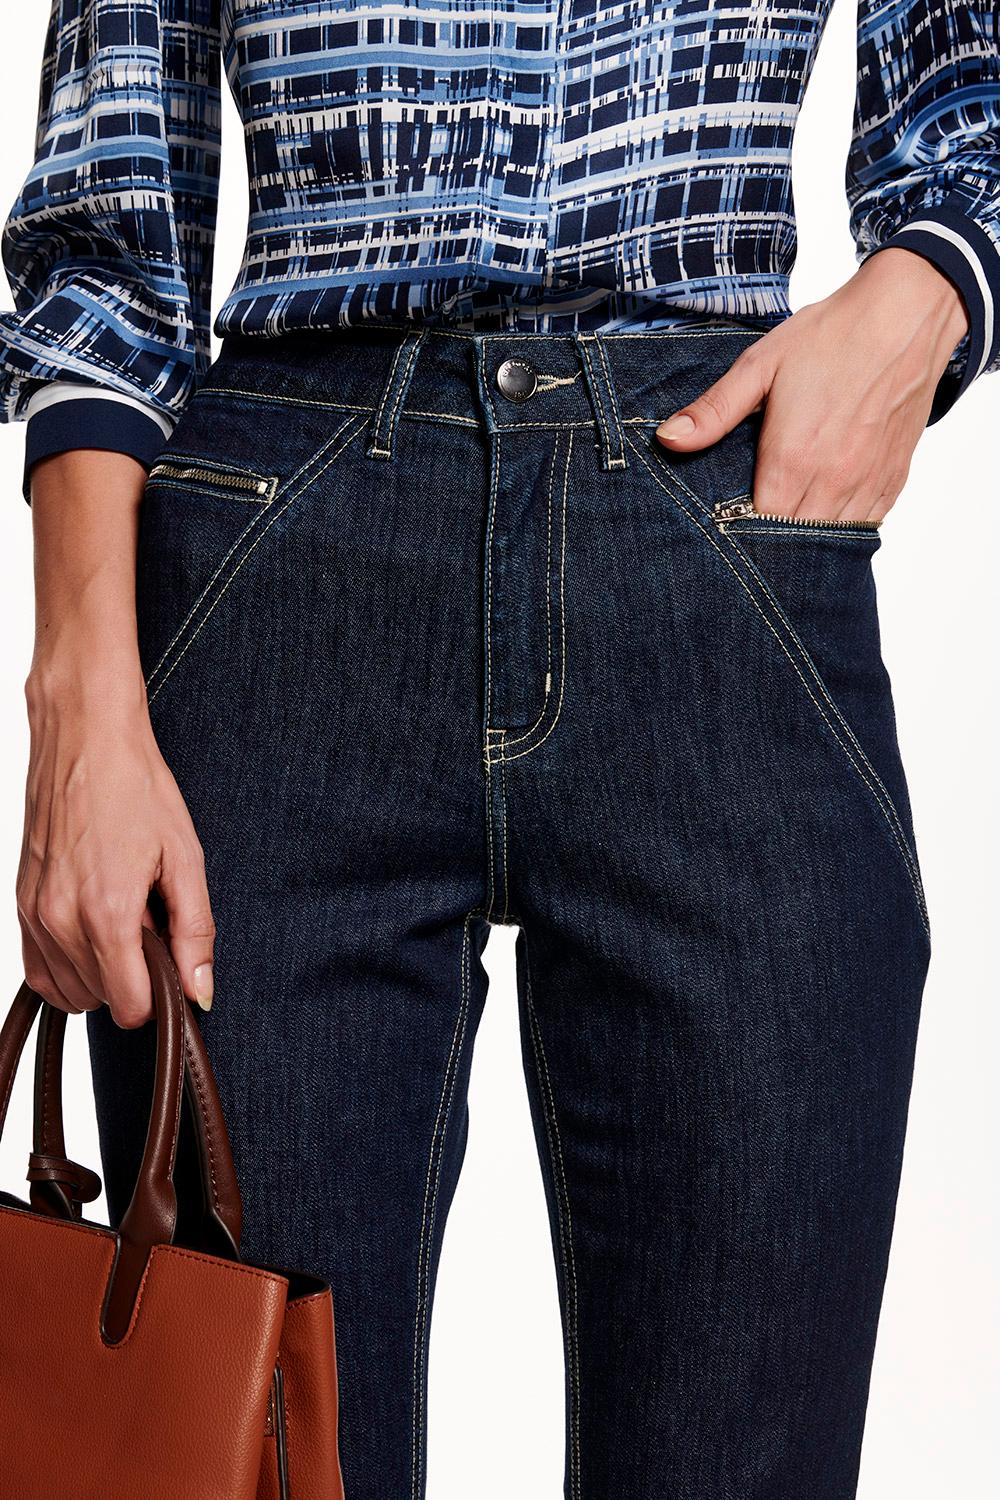 cal?a-jeans-com-ziper---45402-03